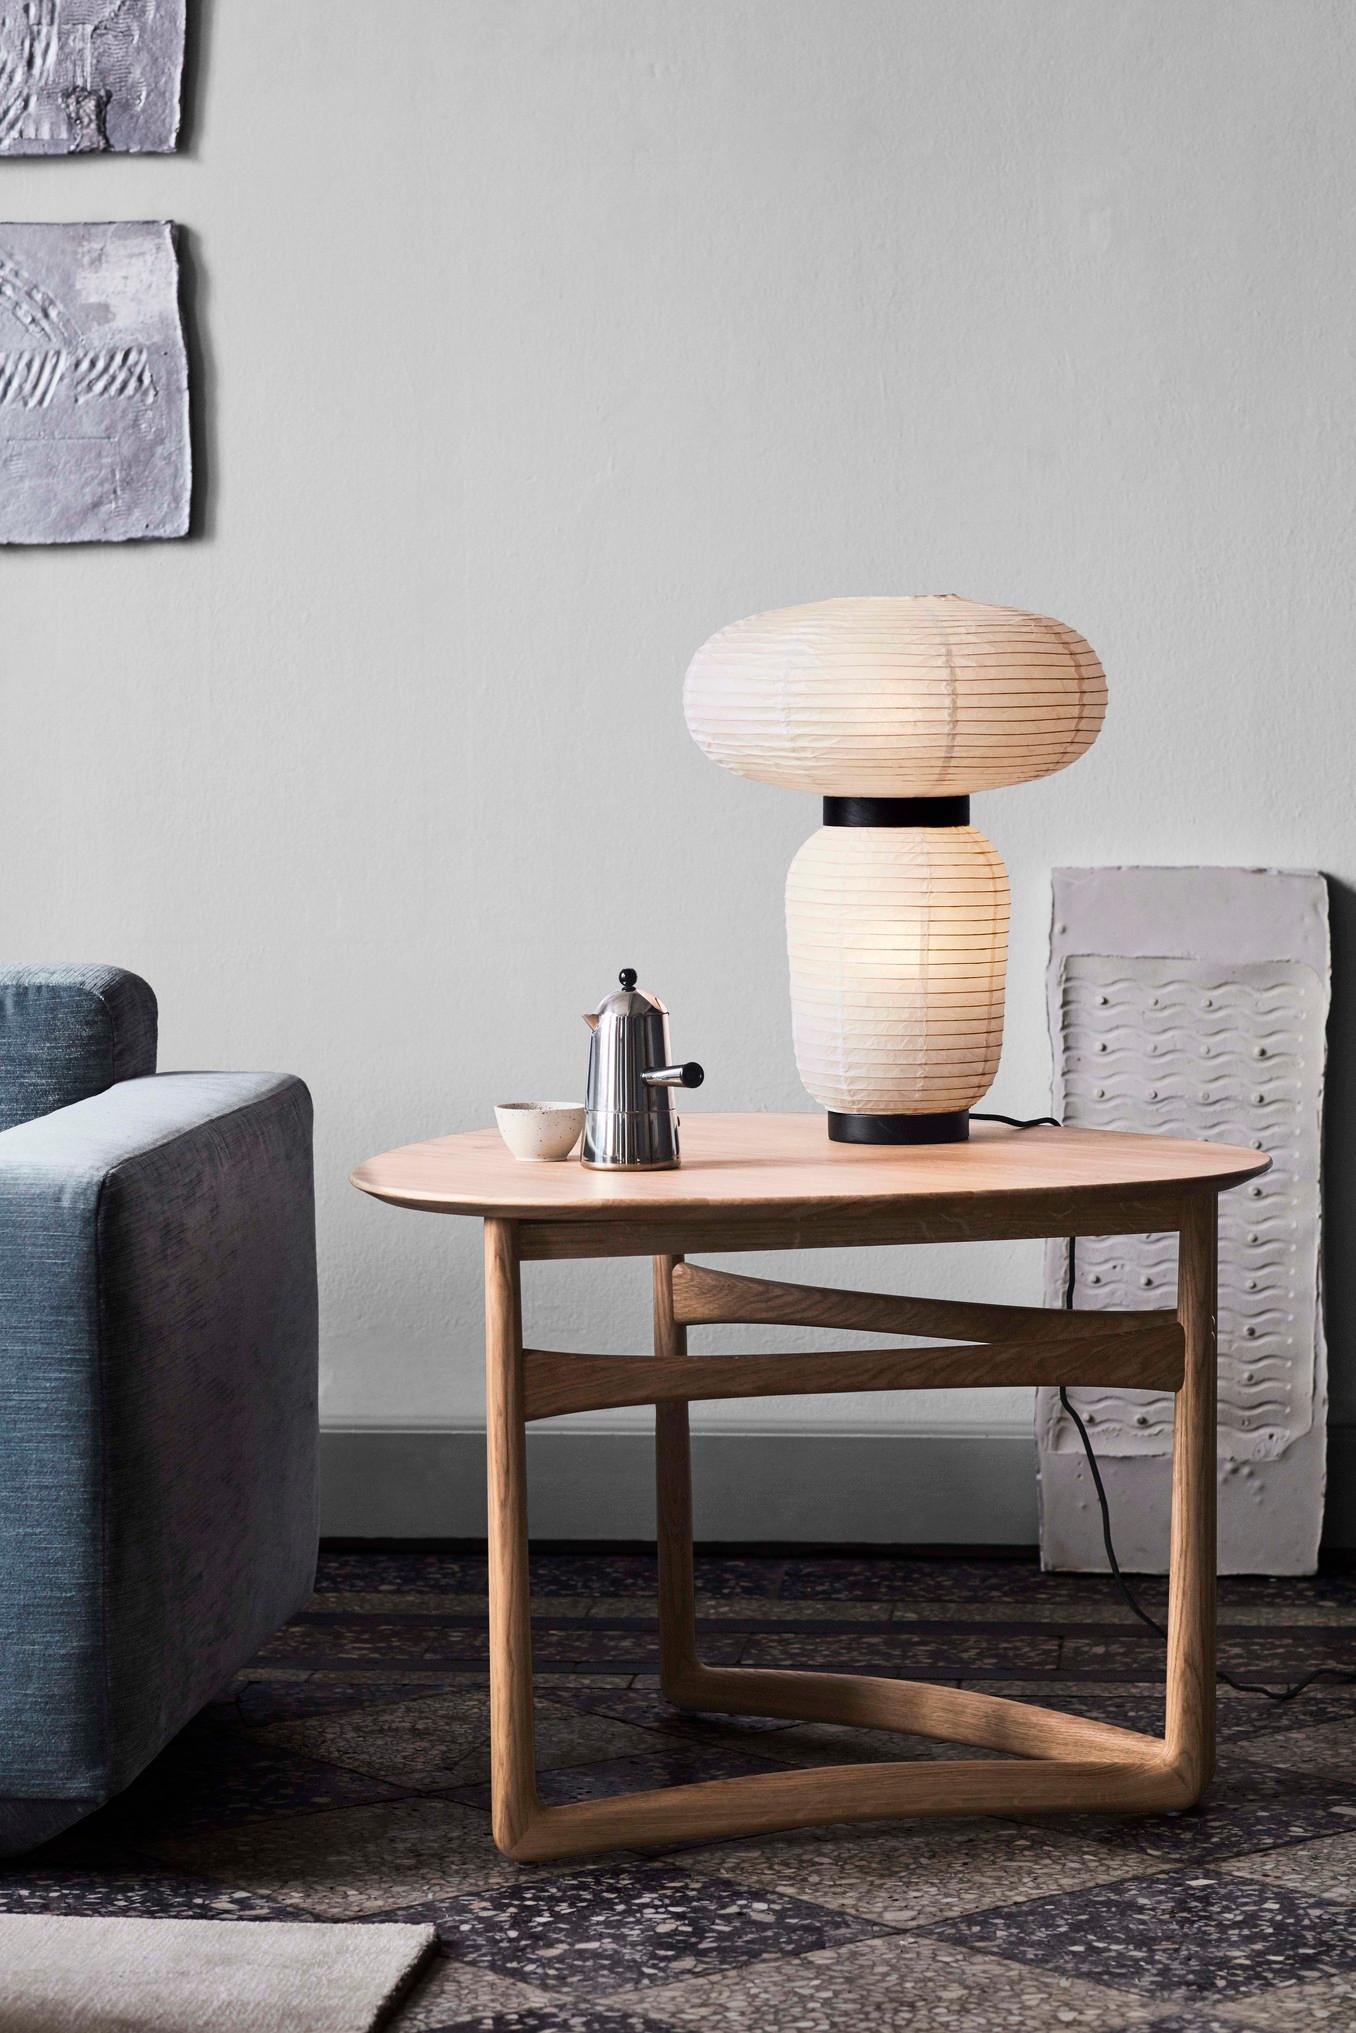 Auf der Suche nach einem vielseitigen Möbelstück, das sich seiner Umgebung anpasst, entwarf das Designerduo Hvidt & Mølgaard 1956 diesen hübschen Lounge-Tisch.
Als Teil der Drop Leaf-Serie verfügt er über die gleichen geschwungenen Holzrahmen und